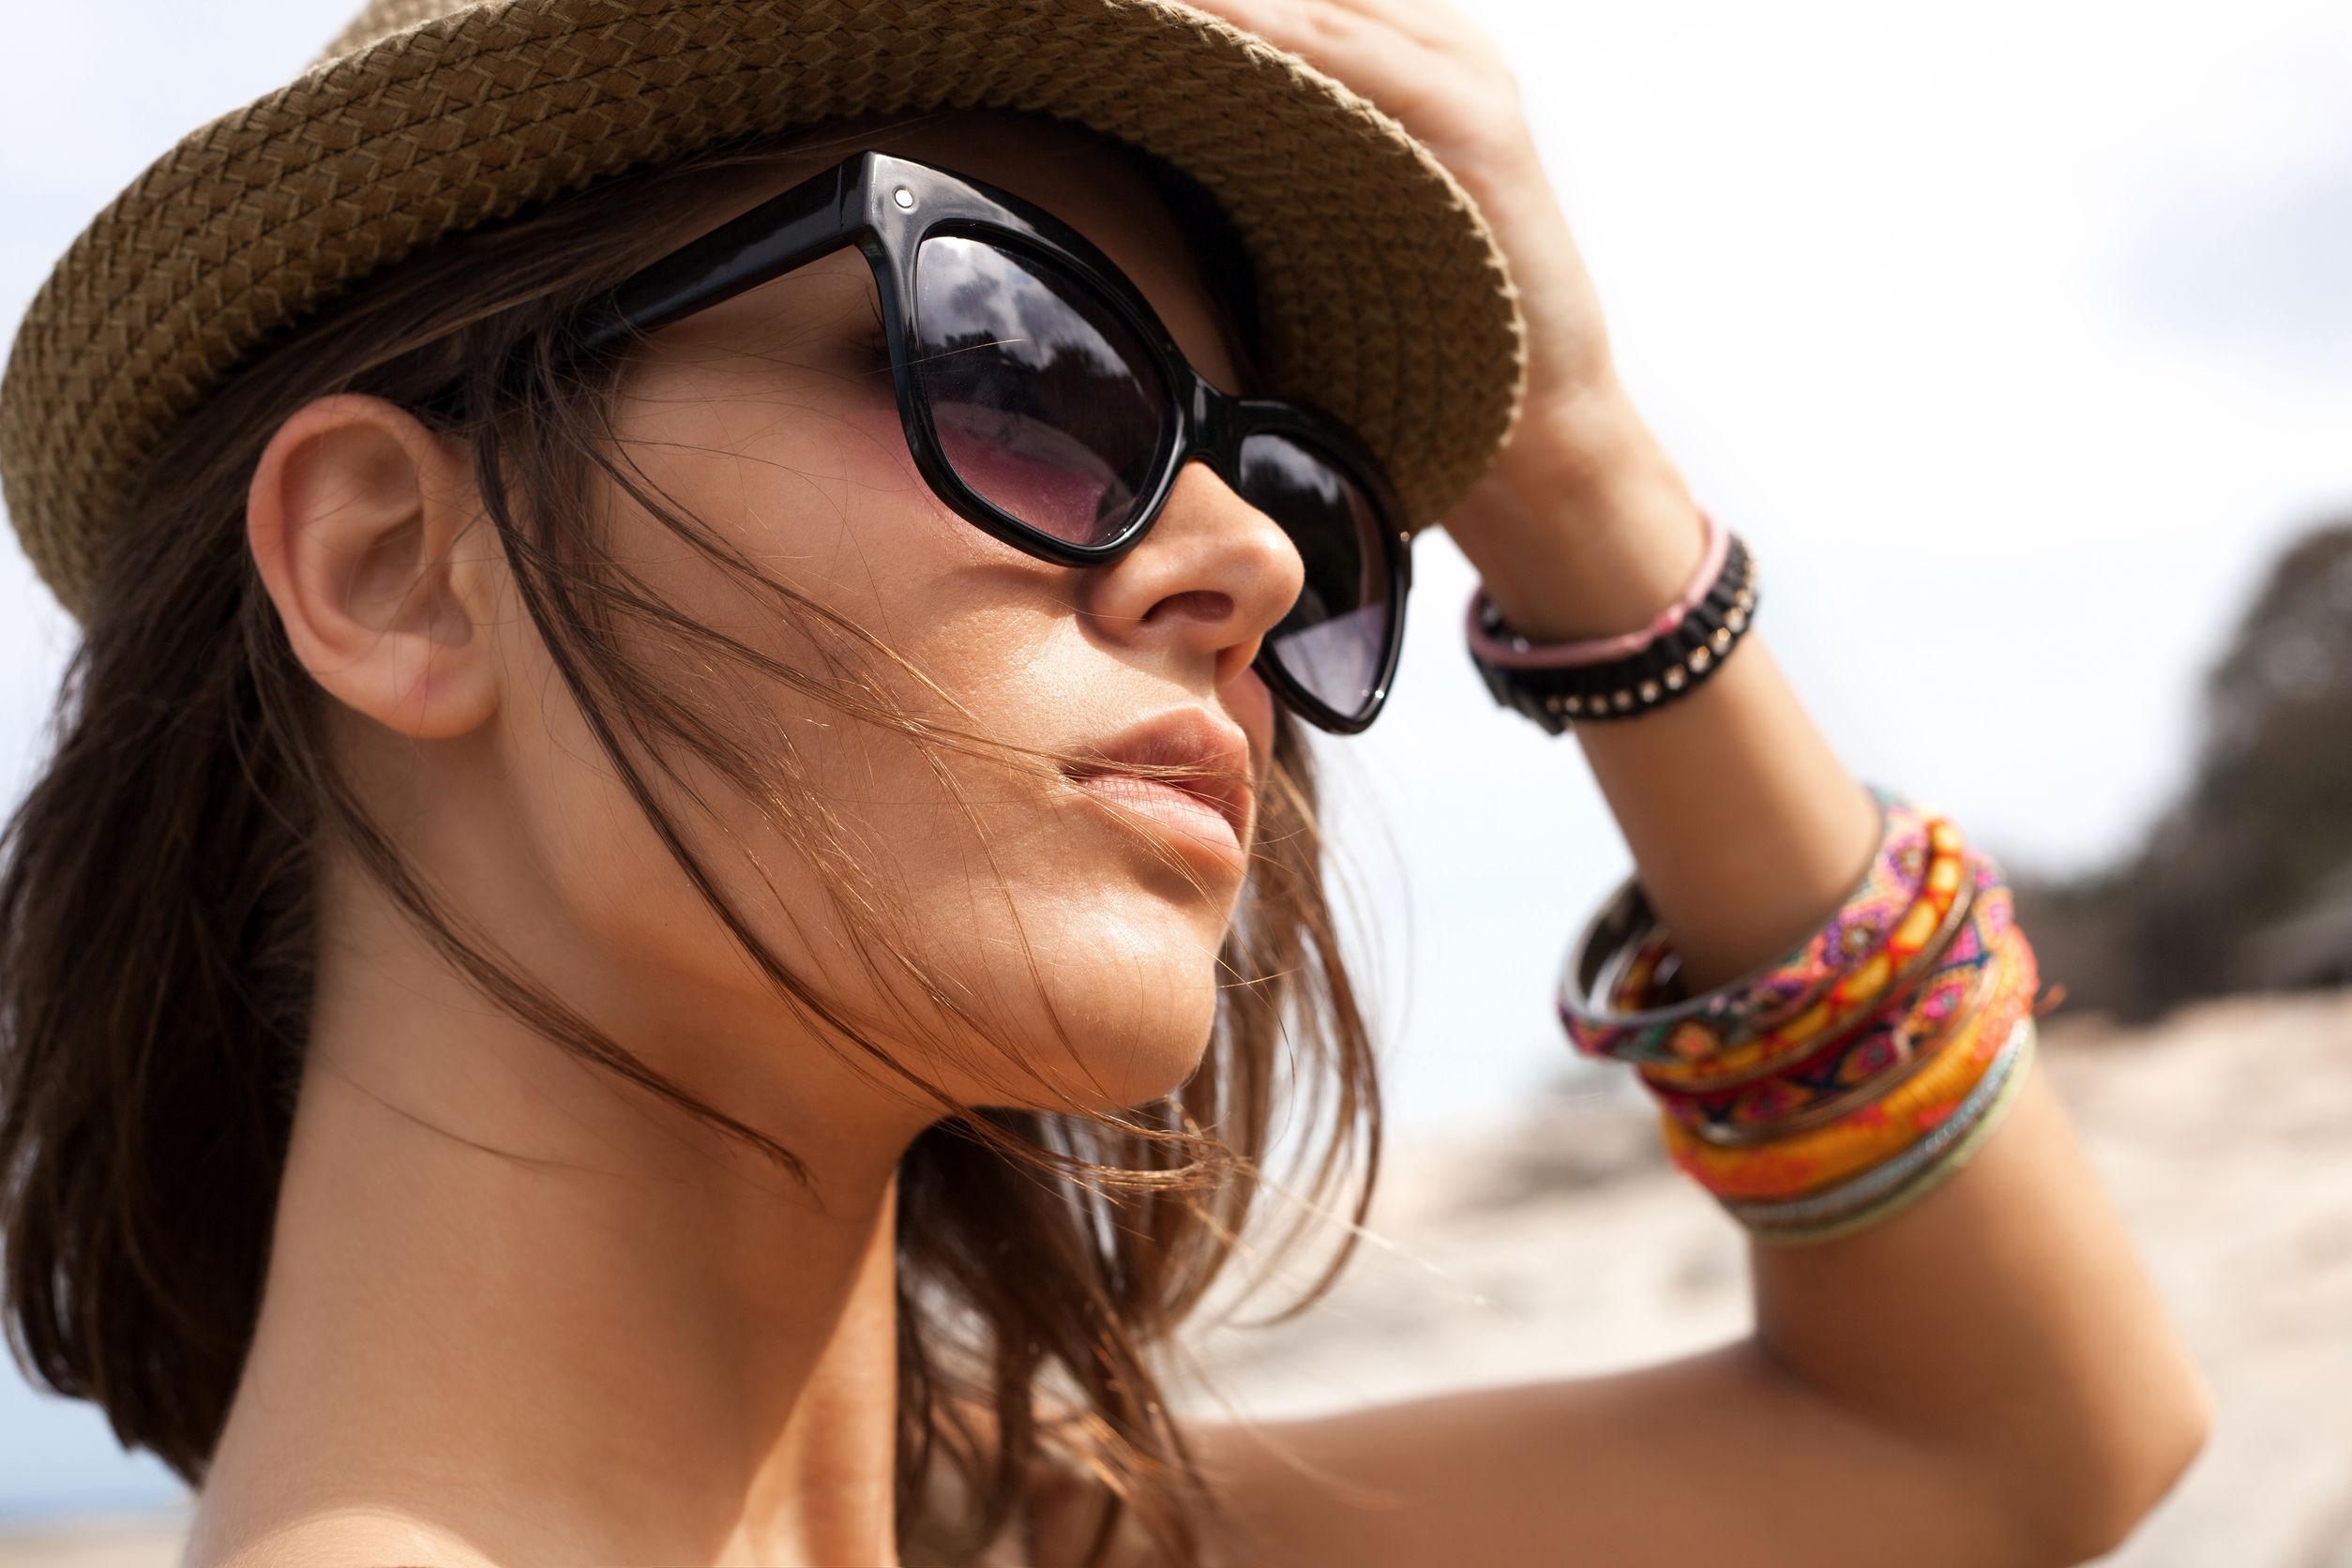 Billige Sonnenbrillen: Schwerwiegende Augenschäden durch ungefilterte UV-Strahlung